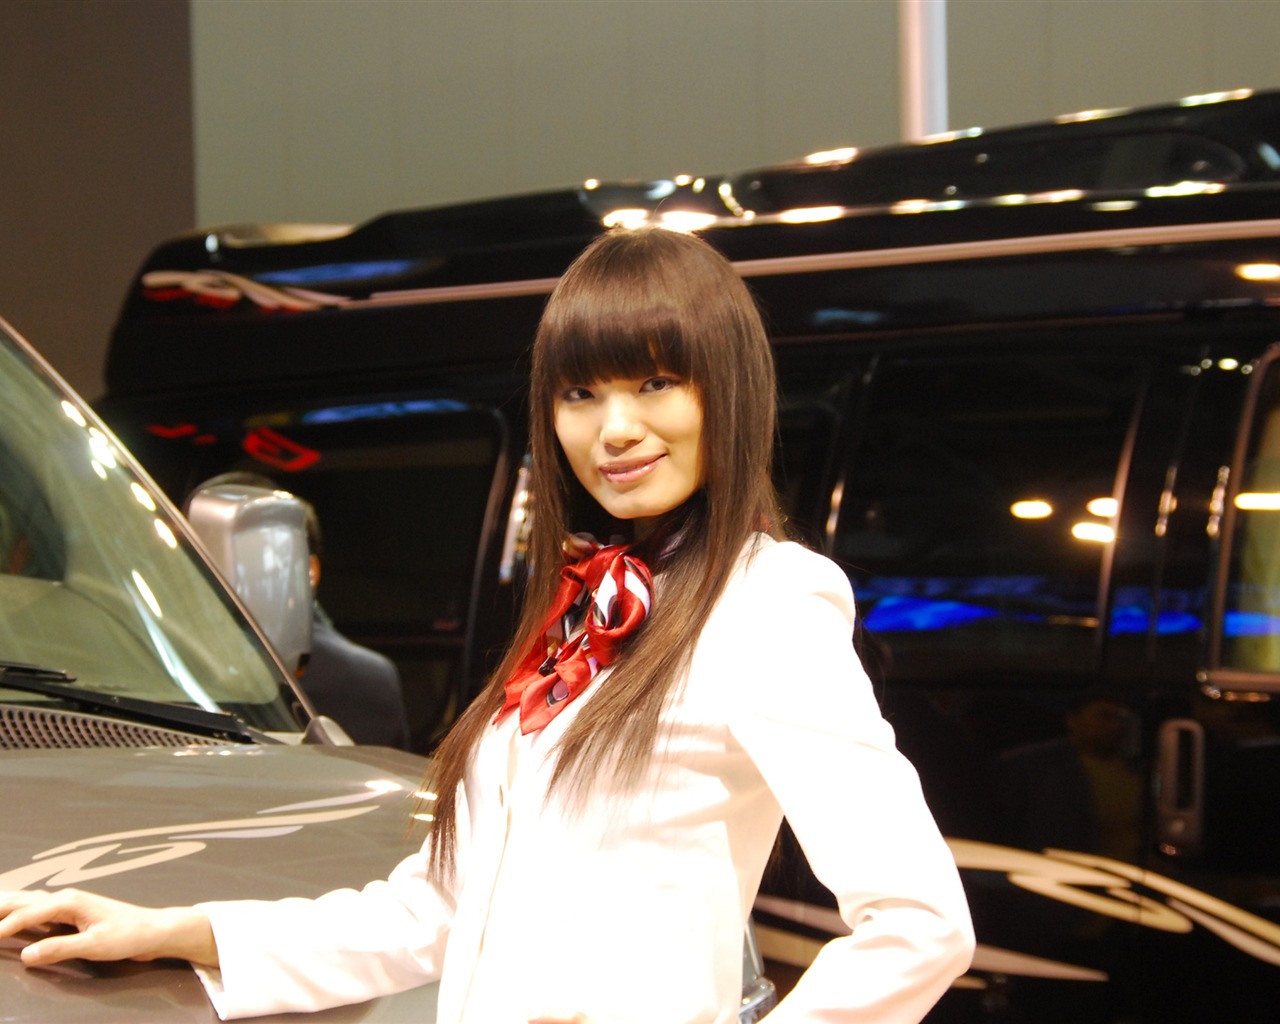 2010 Beijing International Auto Show (2) (z321x123 works) #21 - 1280x1024